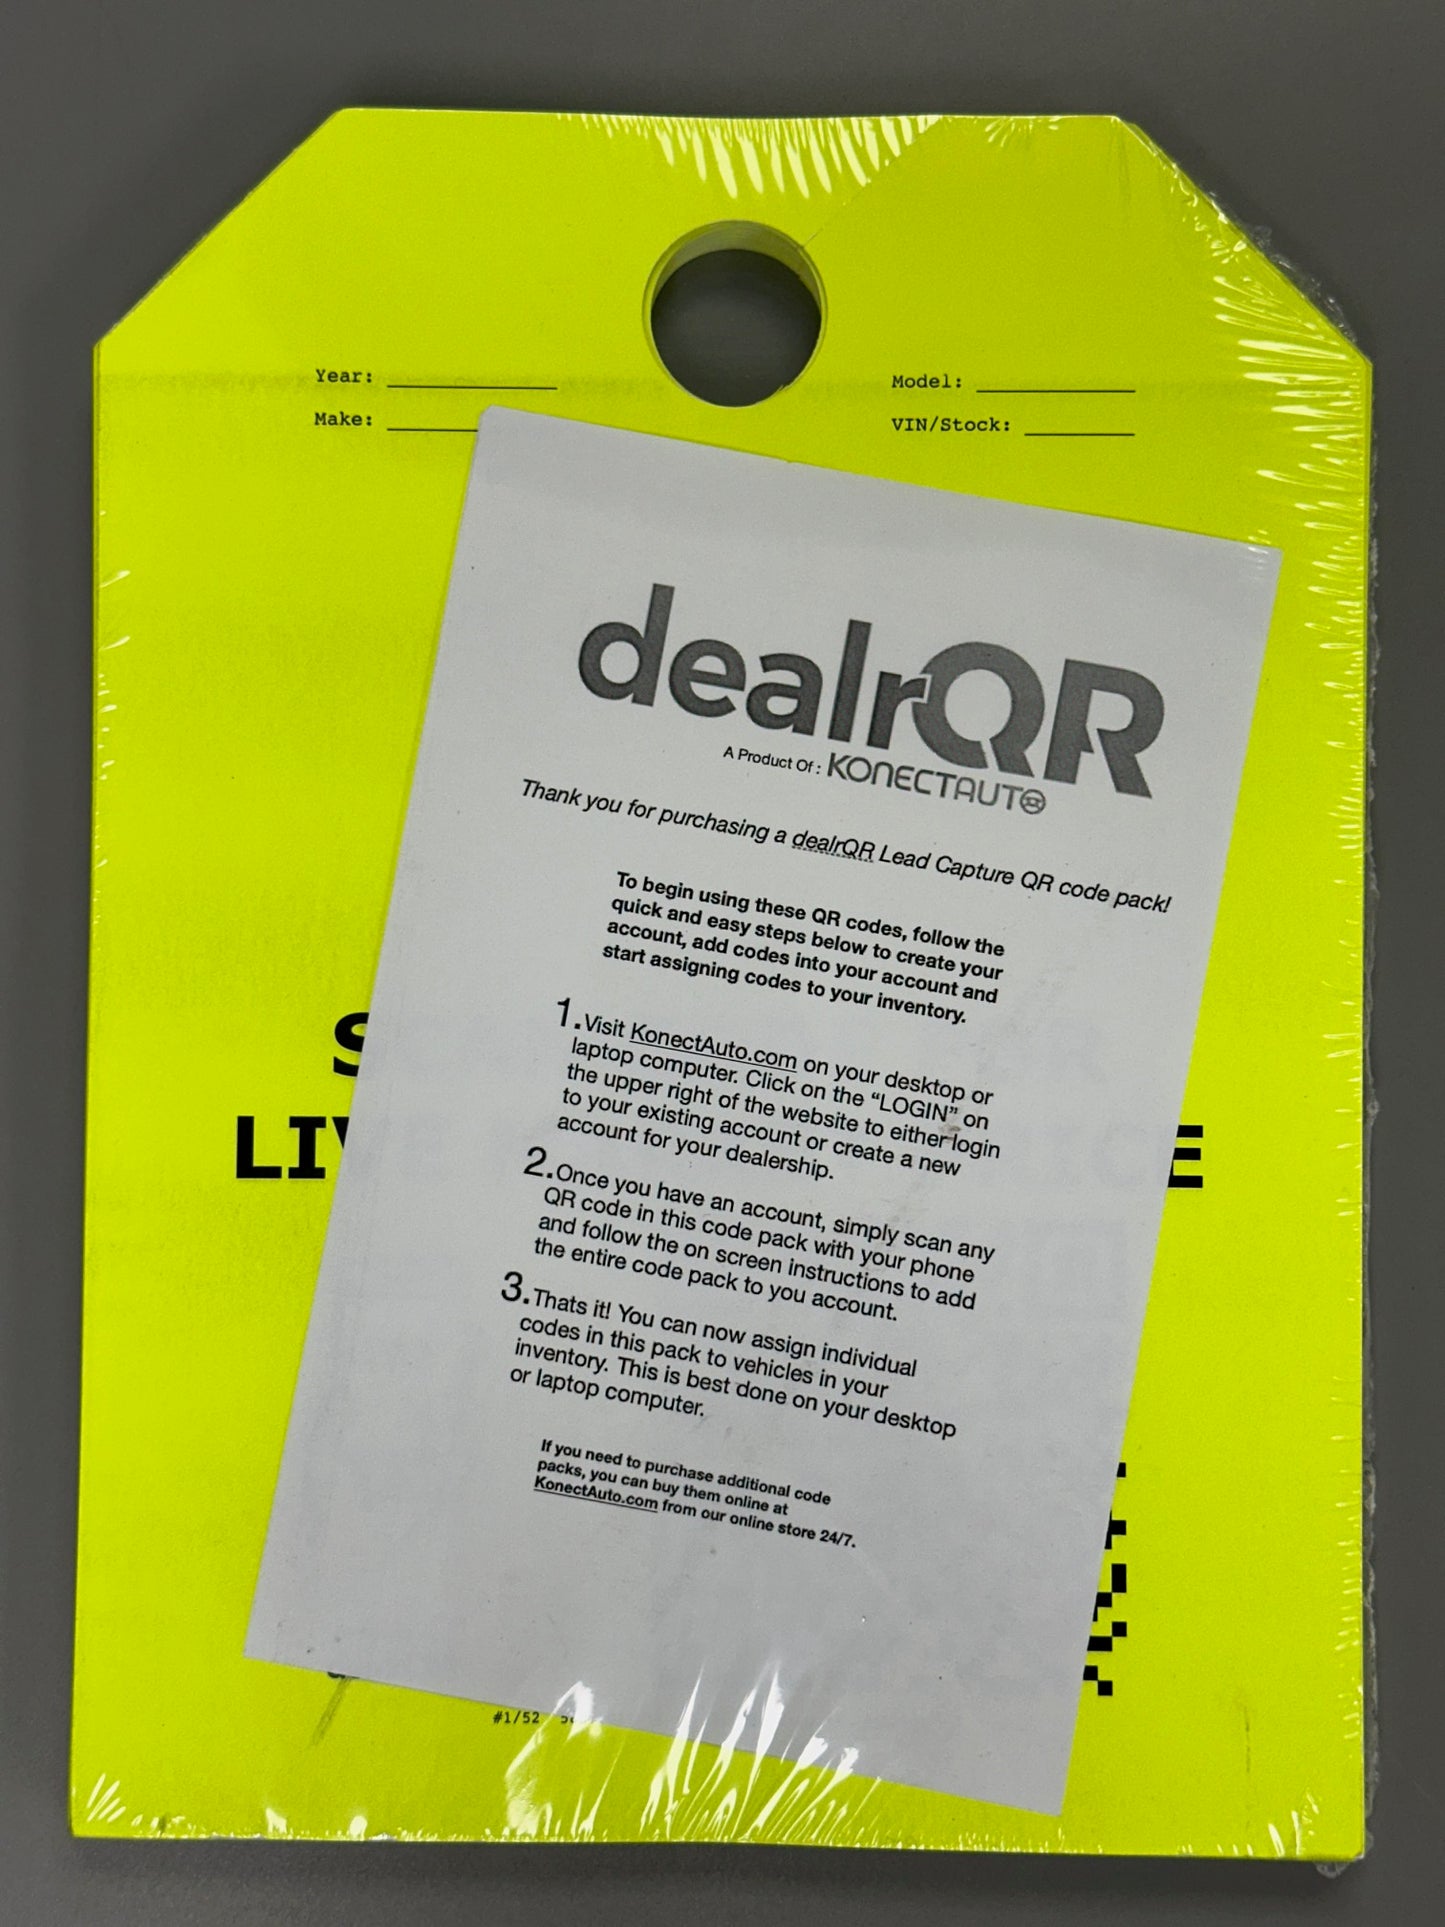 50 dealrQR Lead Capture QR Code Hang Tags